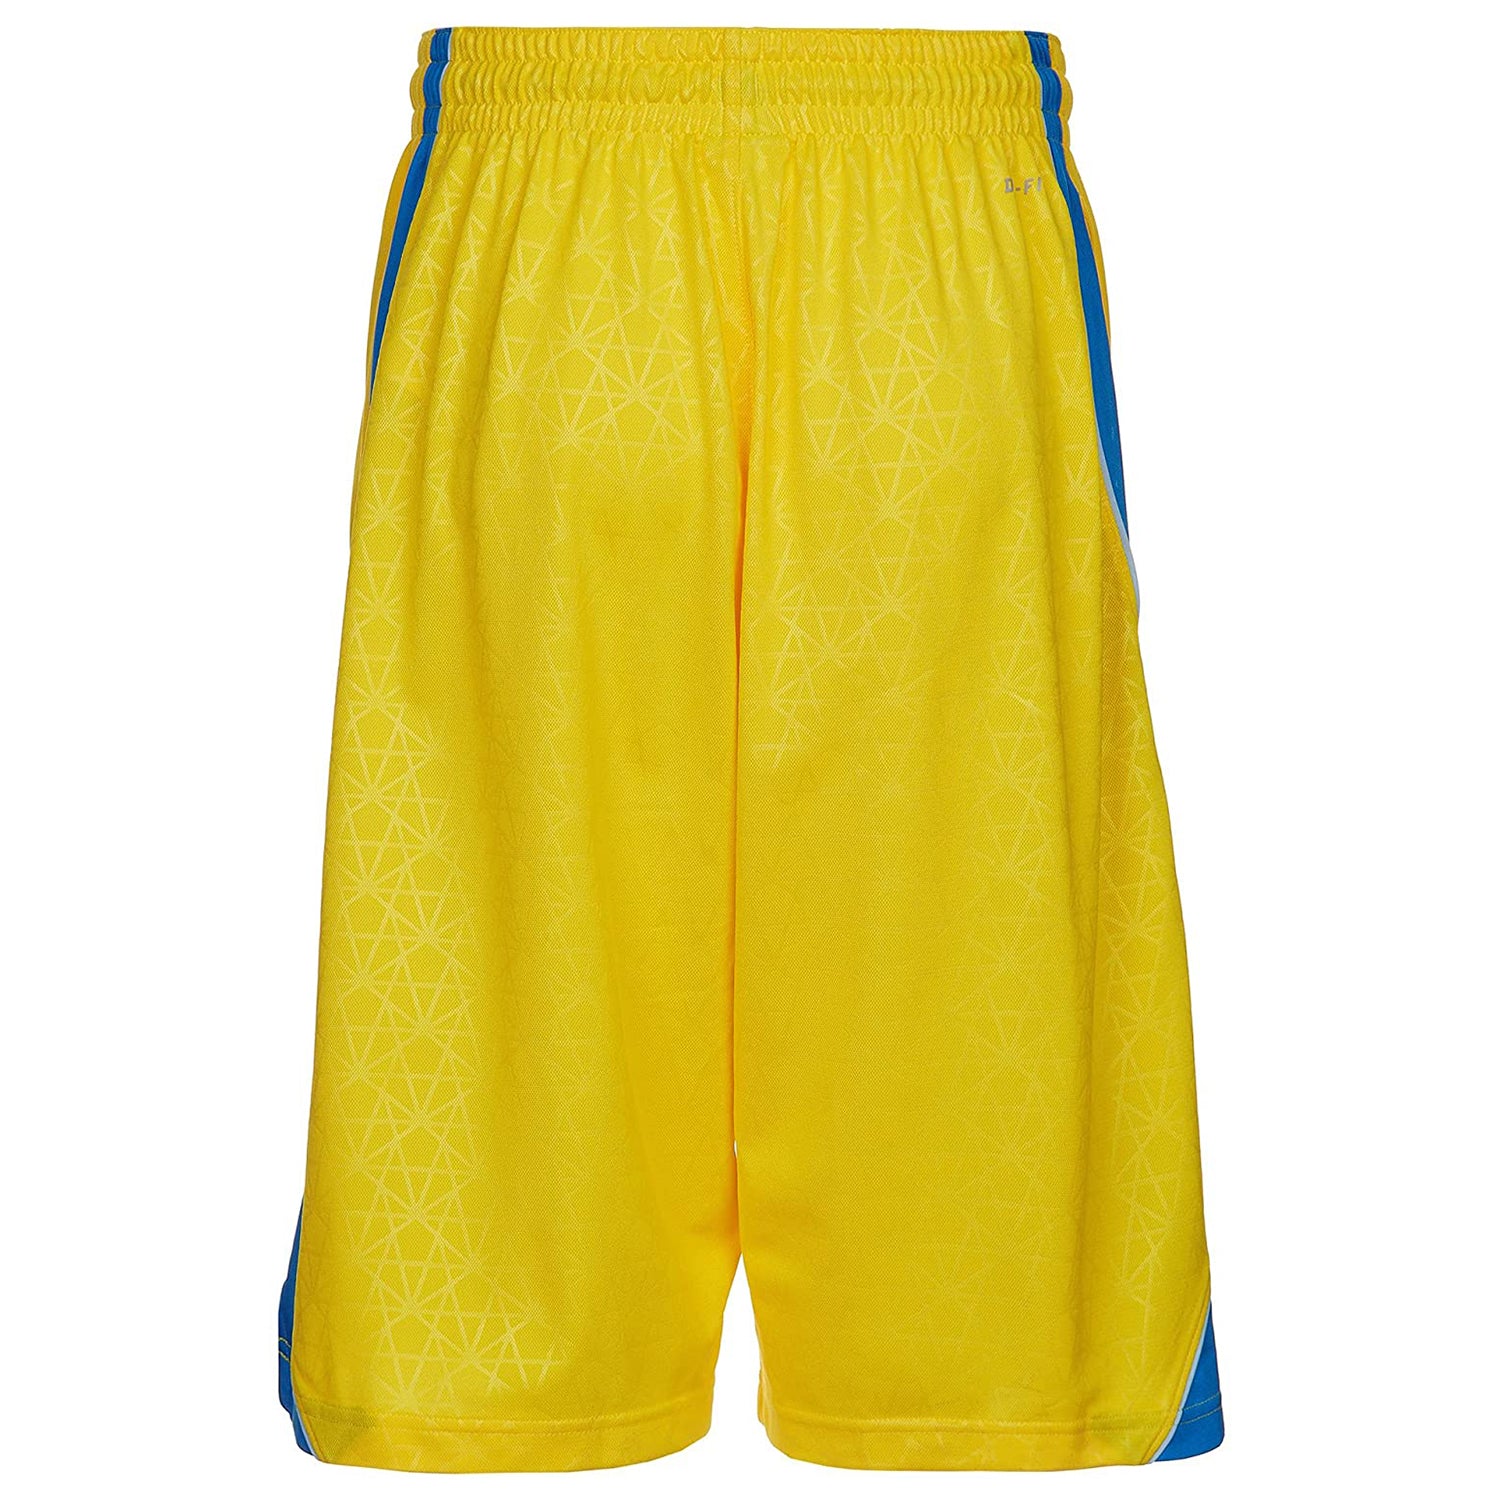 Nike Kd 5 Mens Basketball Shorts Mens Style : 521140